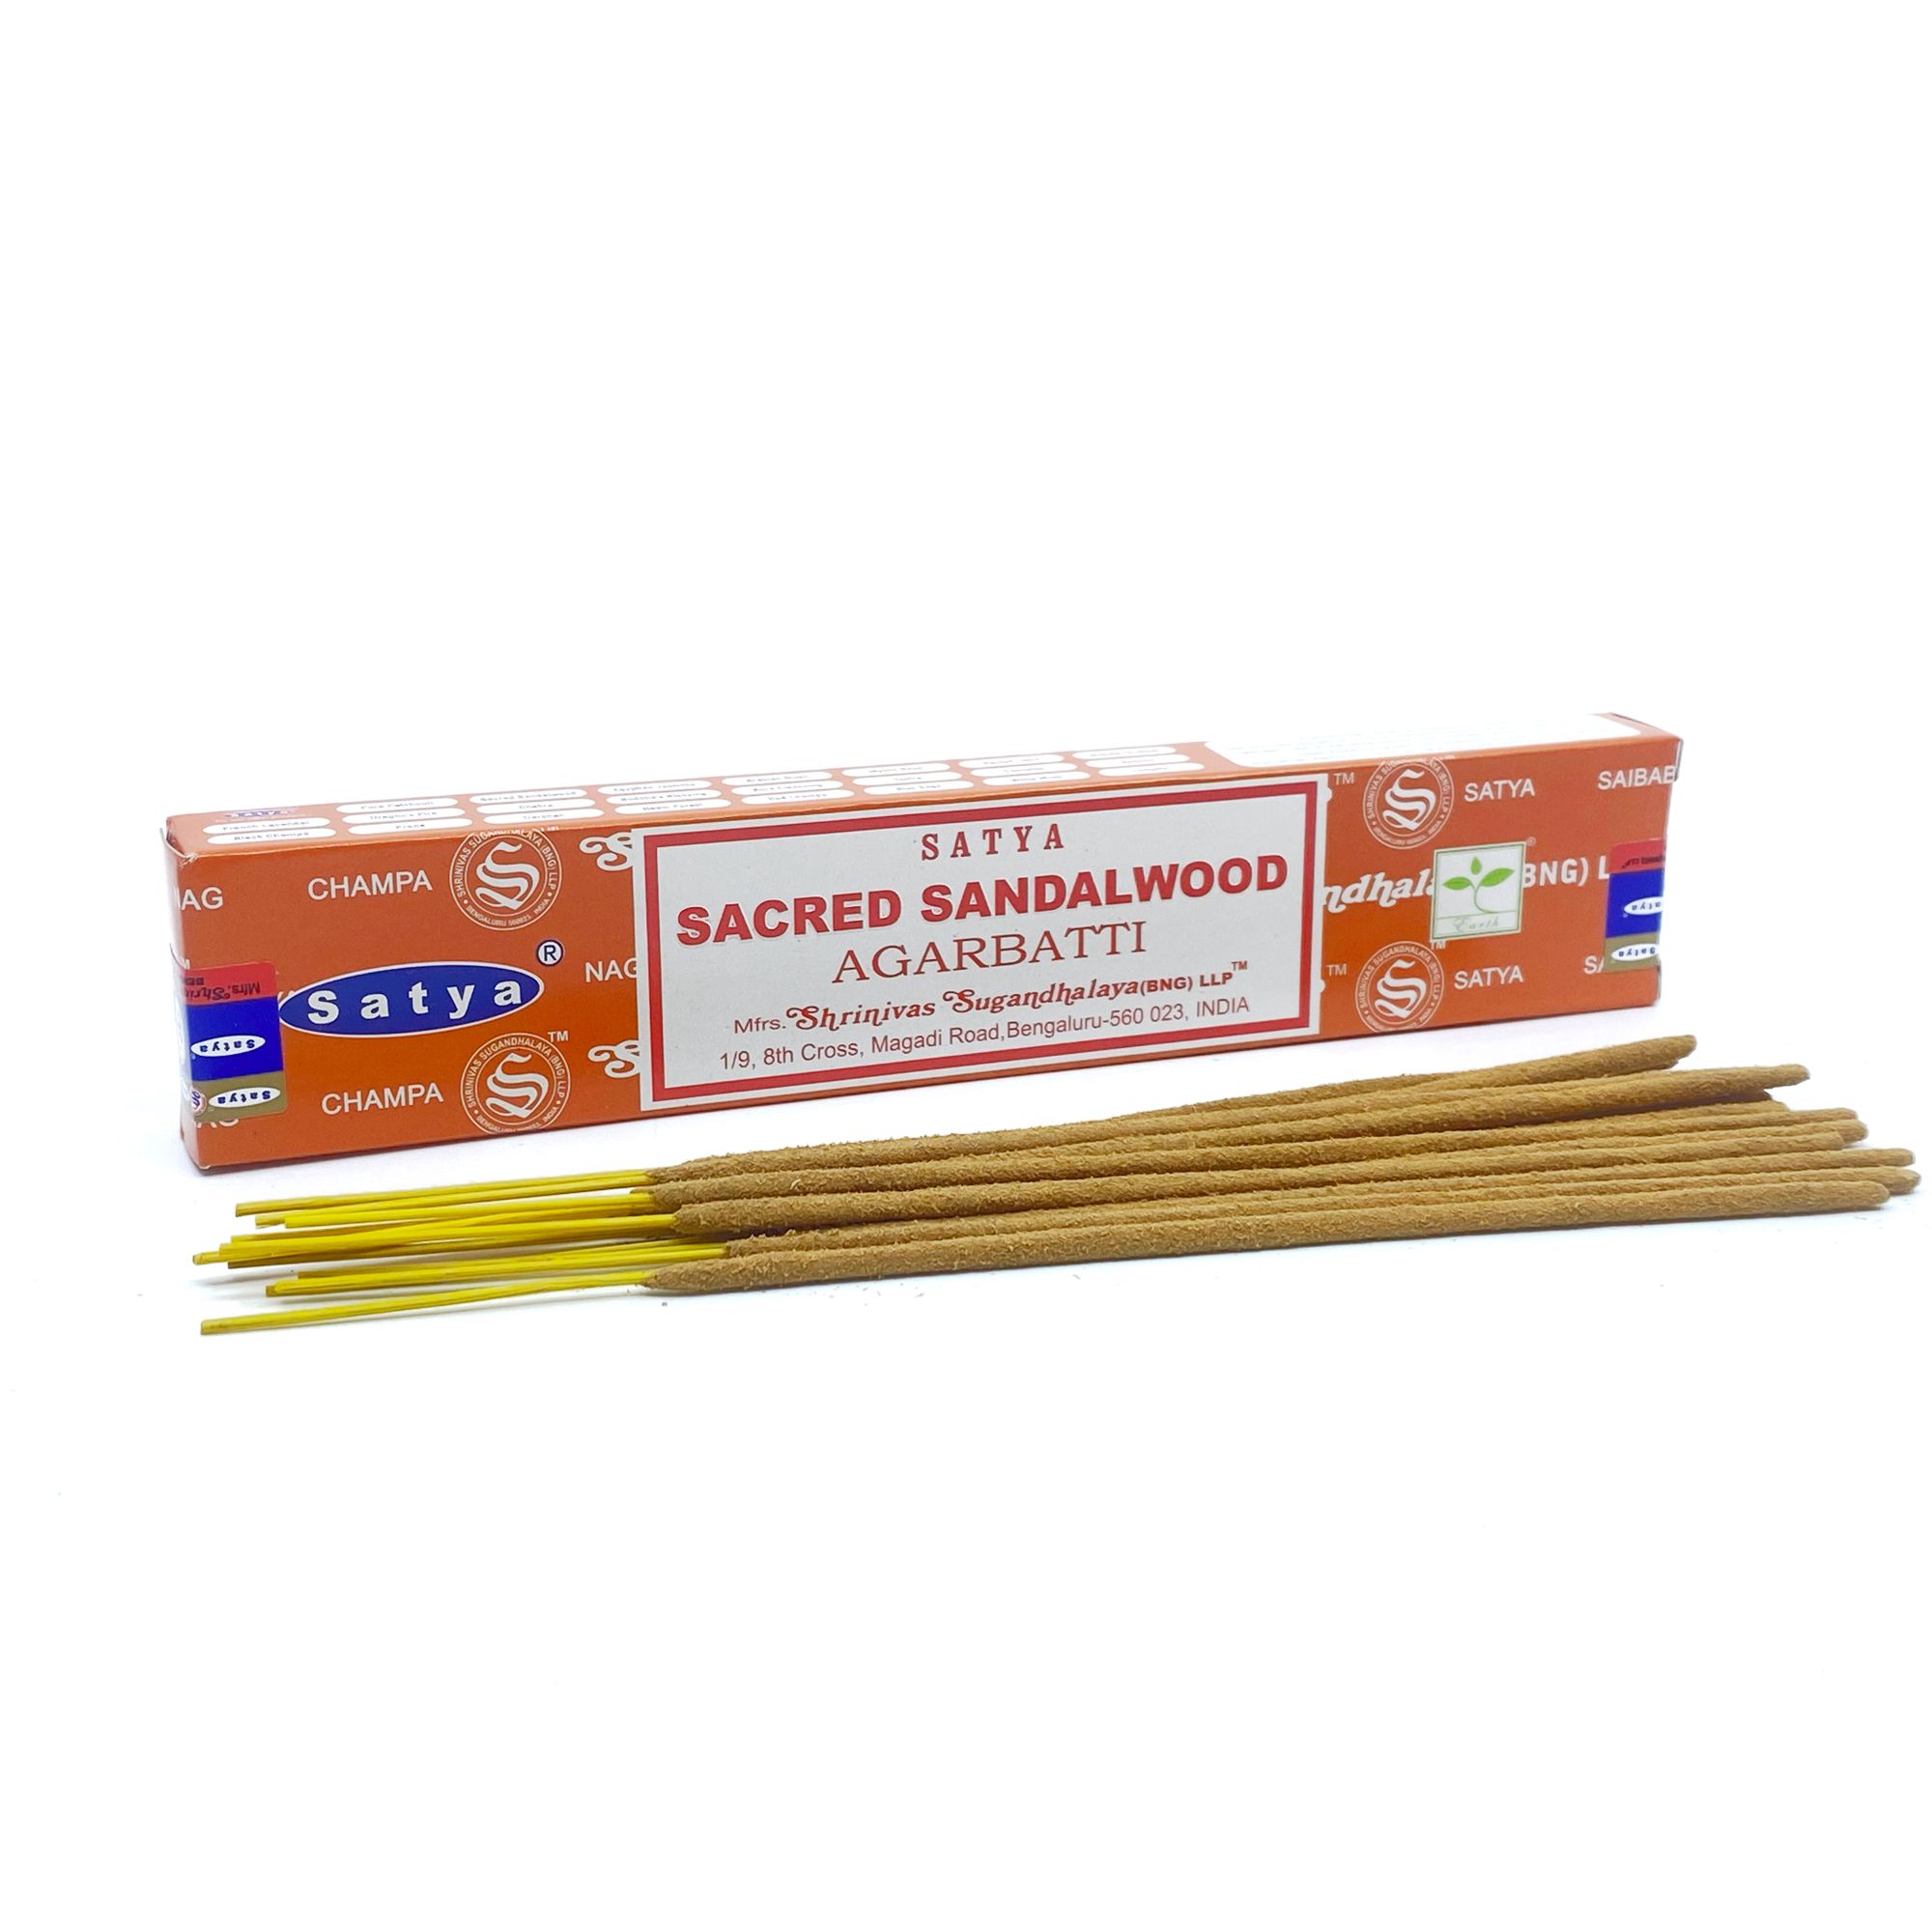 Sacred sandalwood 15g (Satya)